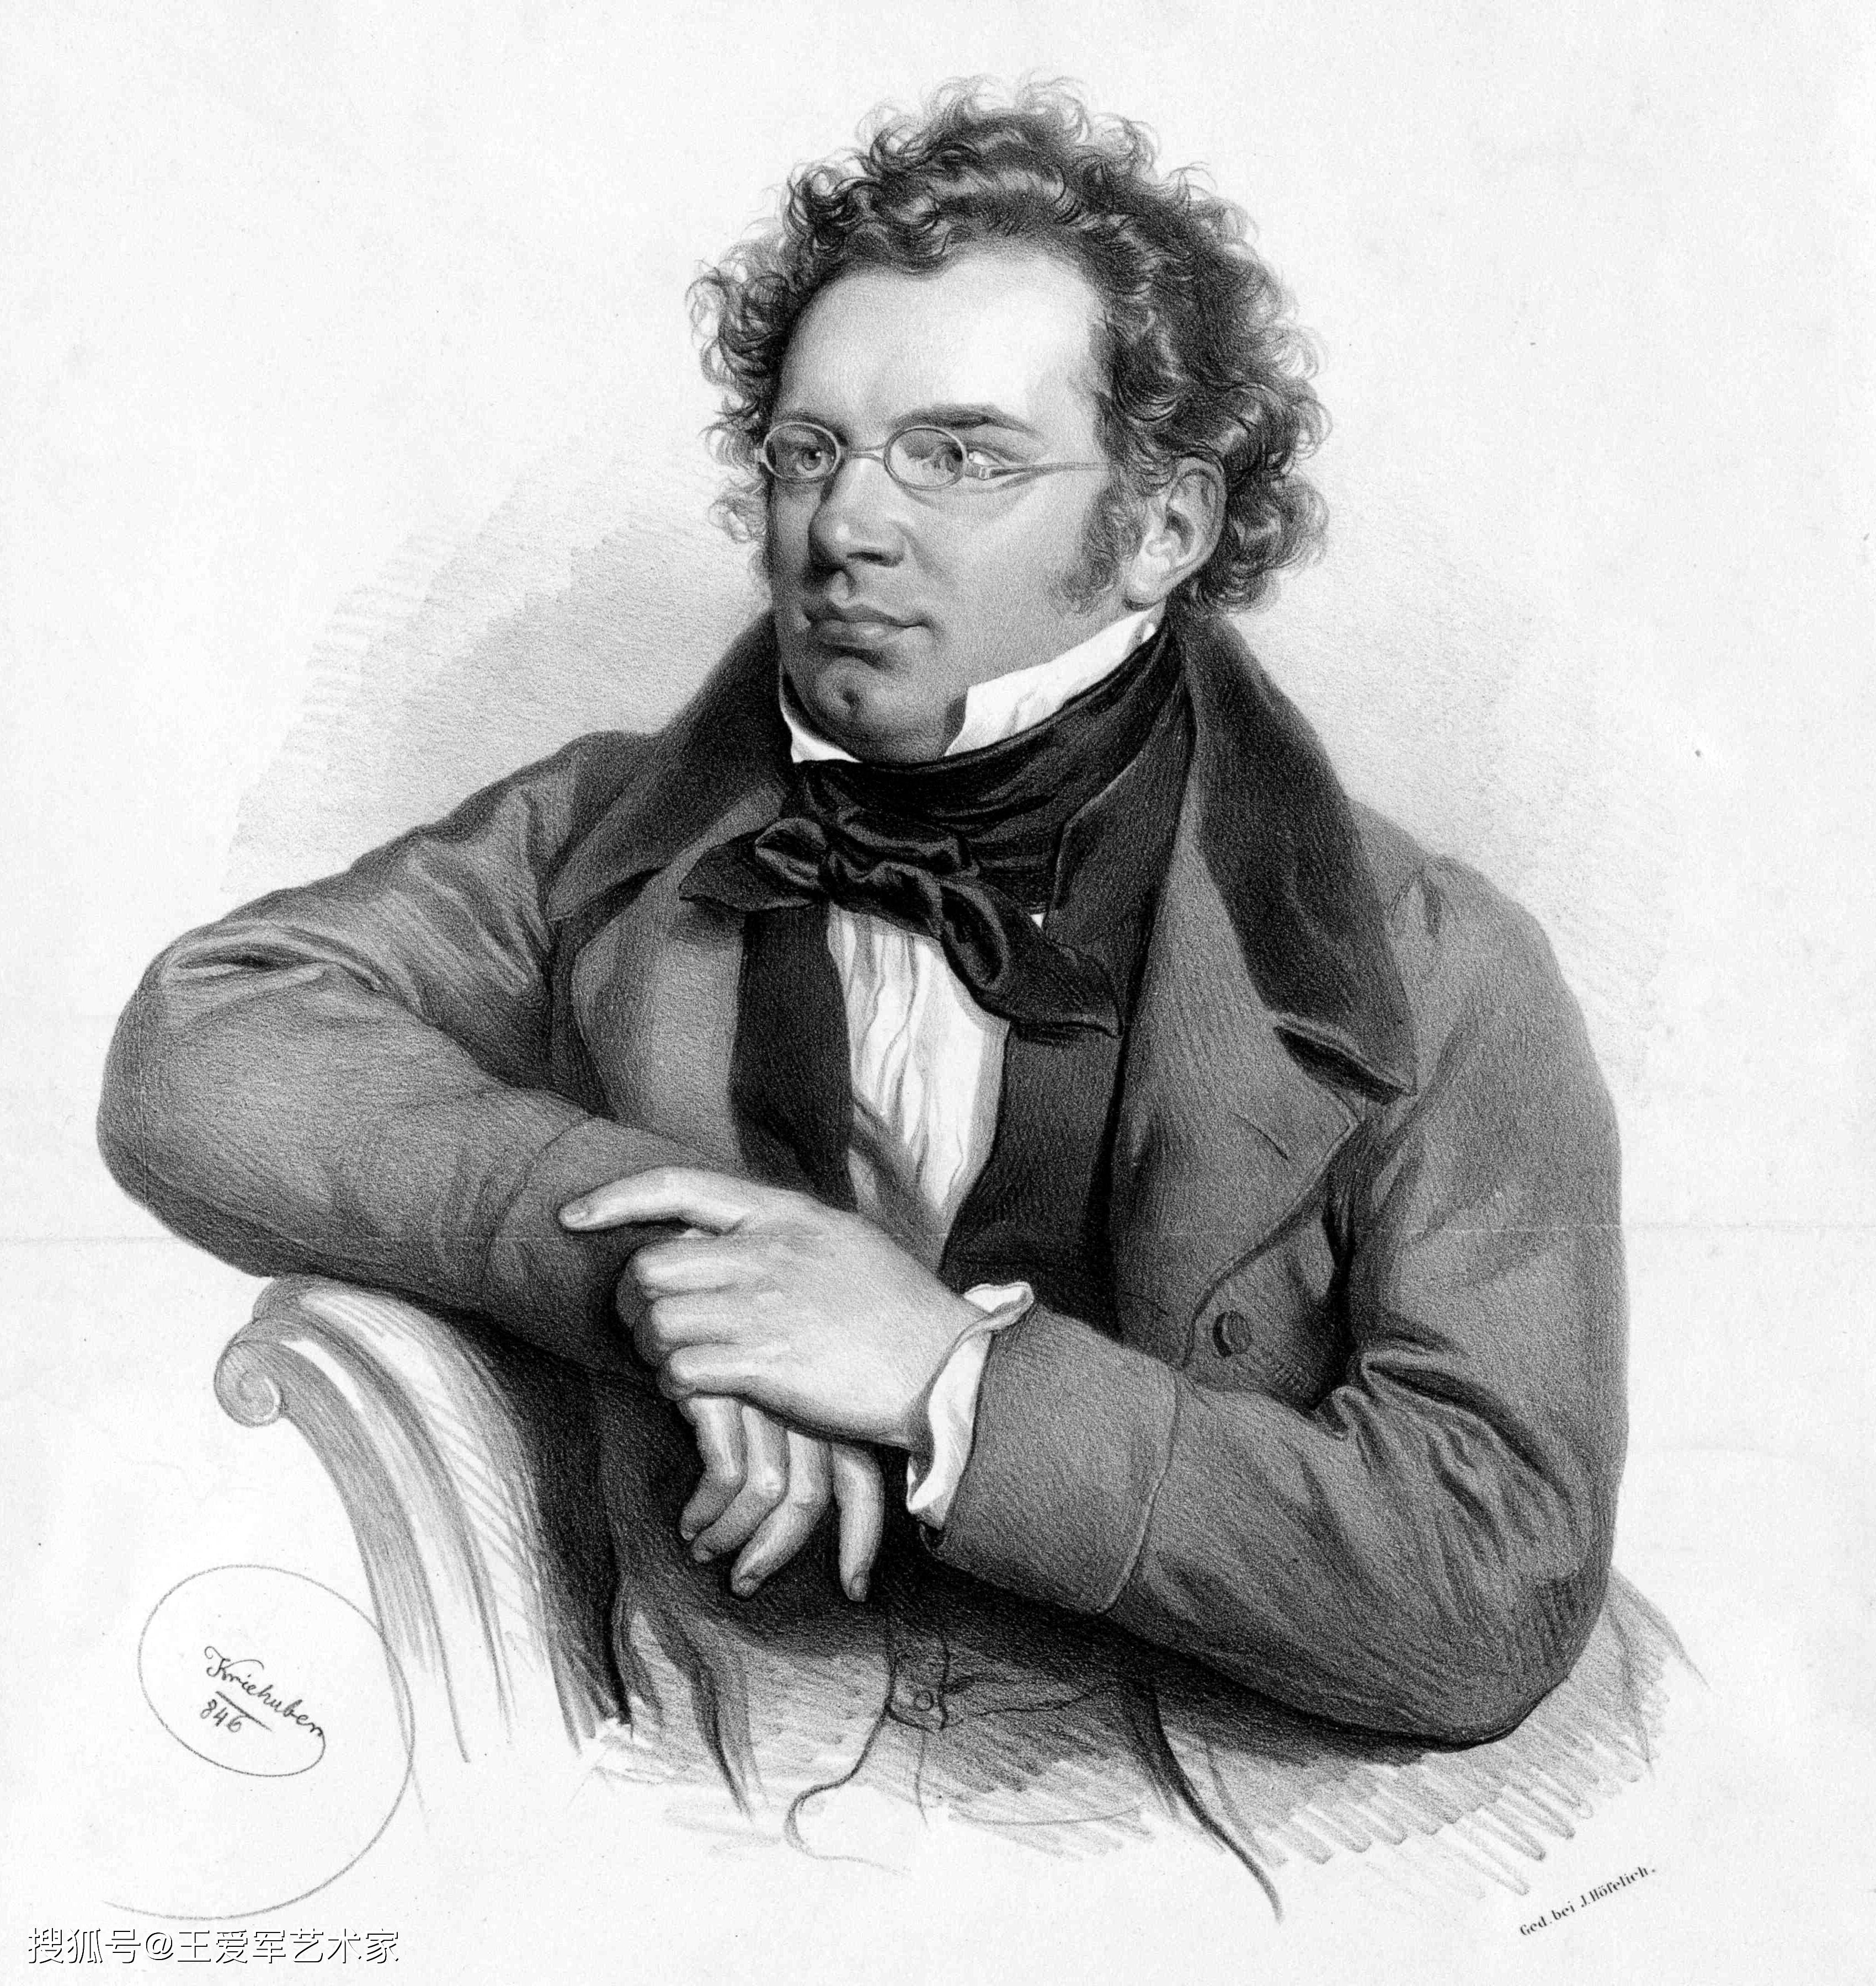 奥地利作曲家弗朗茨 舒伯特肖像画 王爱军 音乐 萨列里 父亲